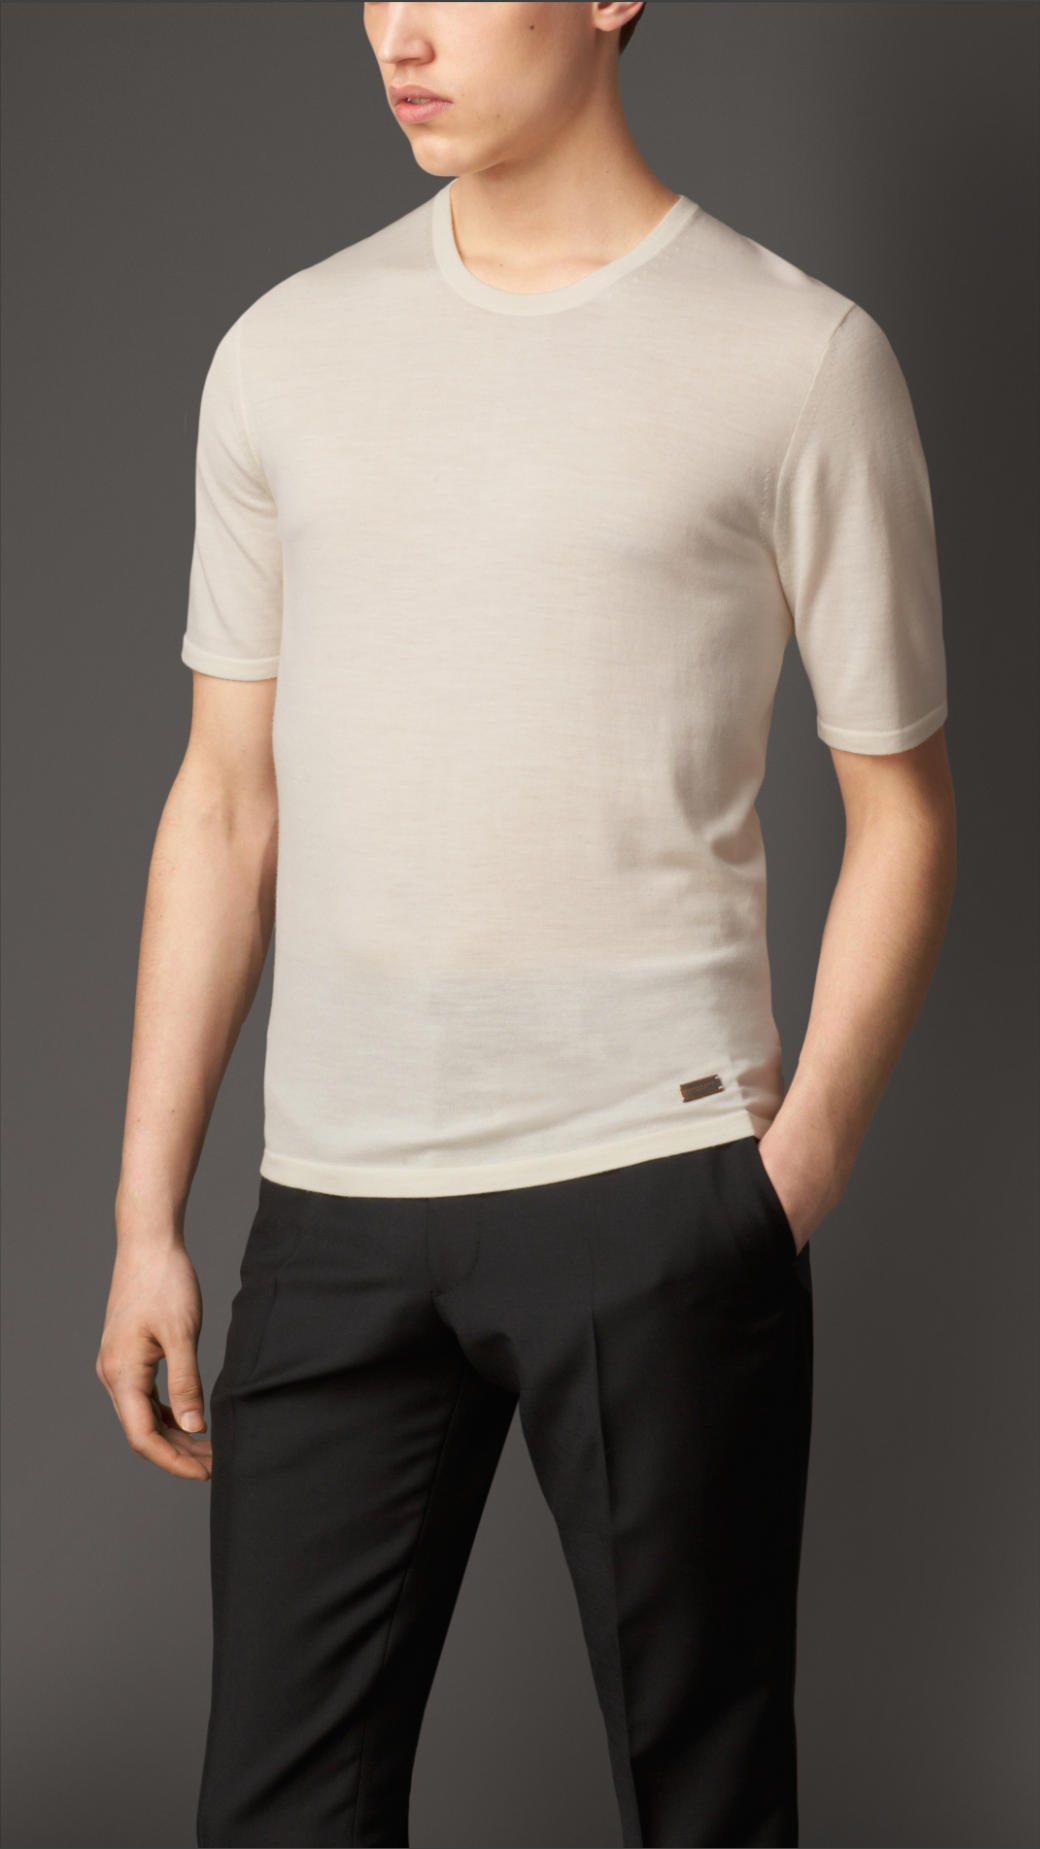 Lyst - Burberry Merino Wool T-Shirt in White for Men